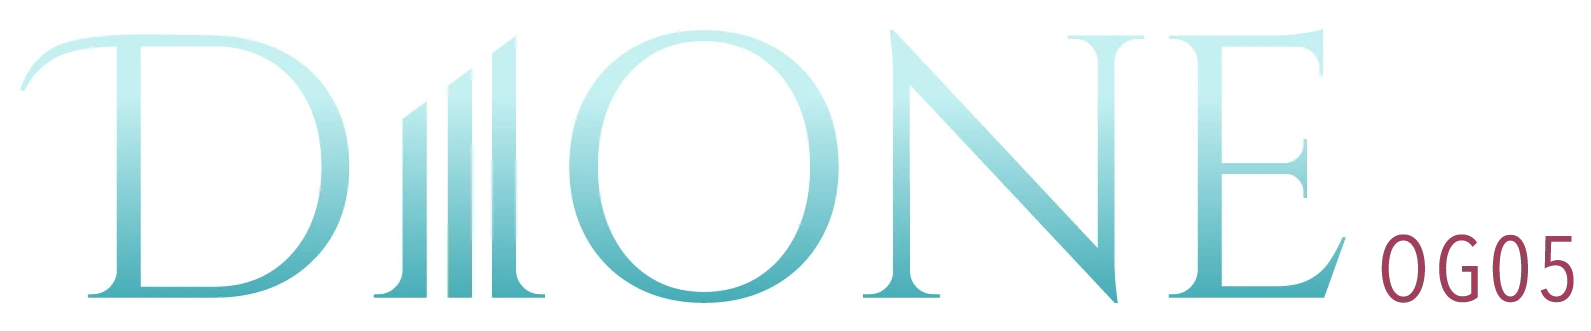 DIONE OG05 Official logo